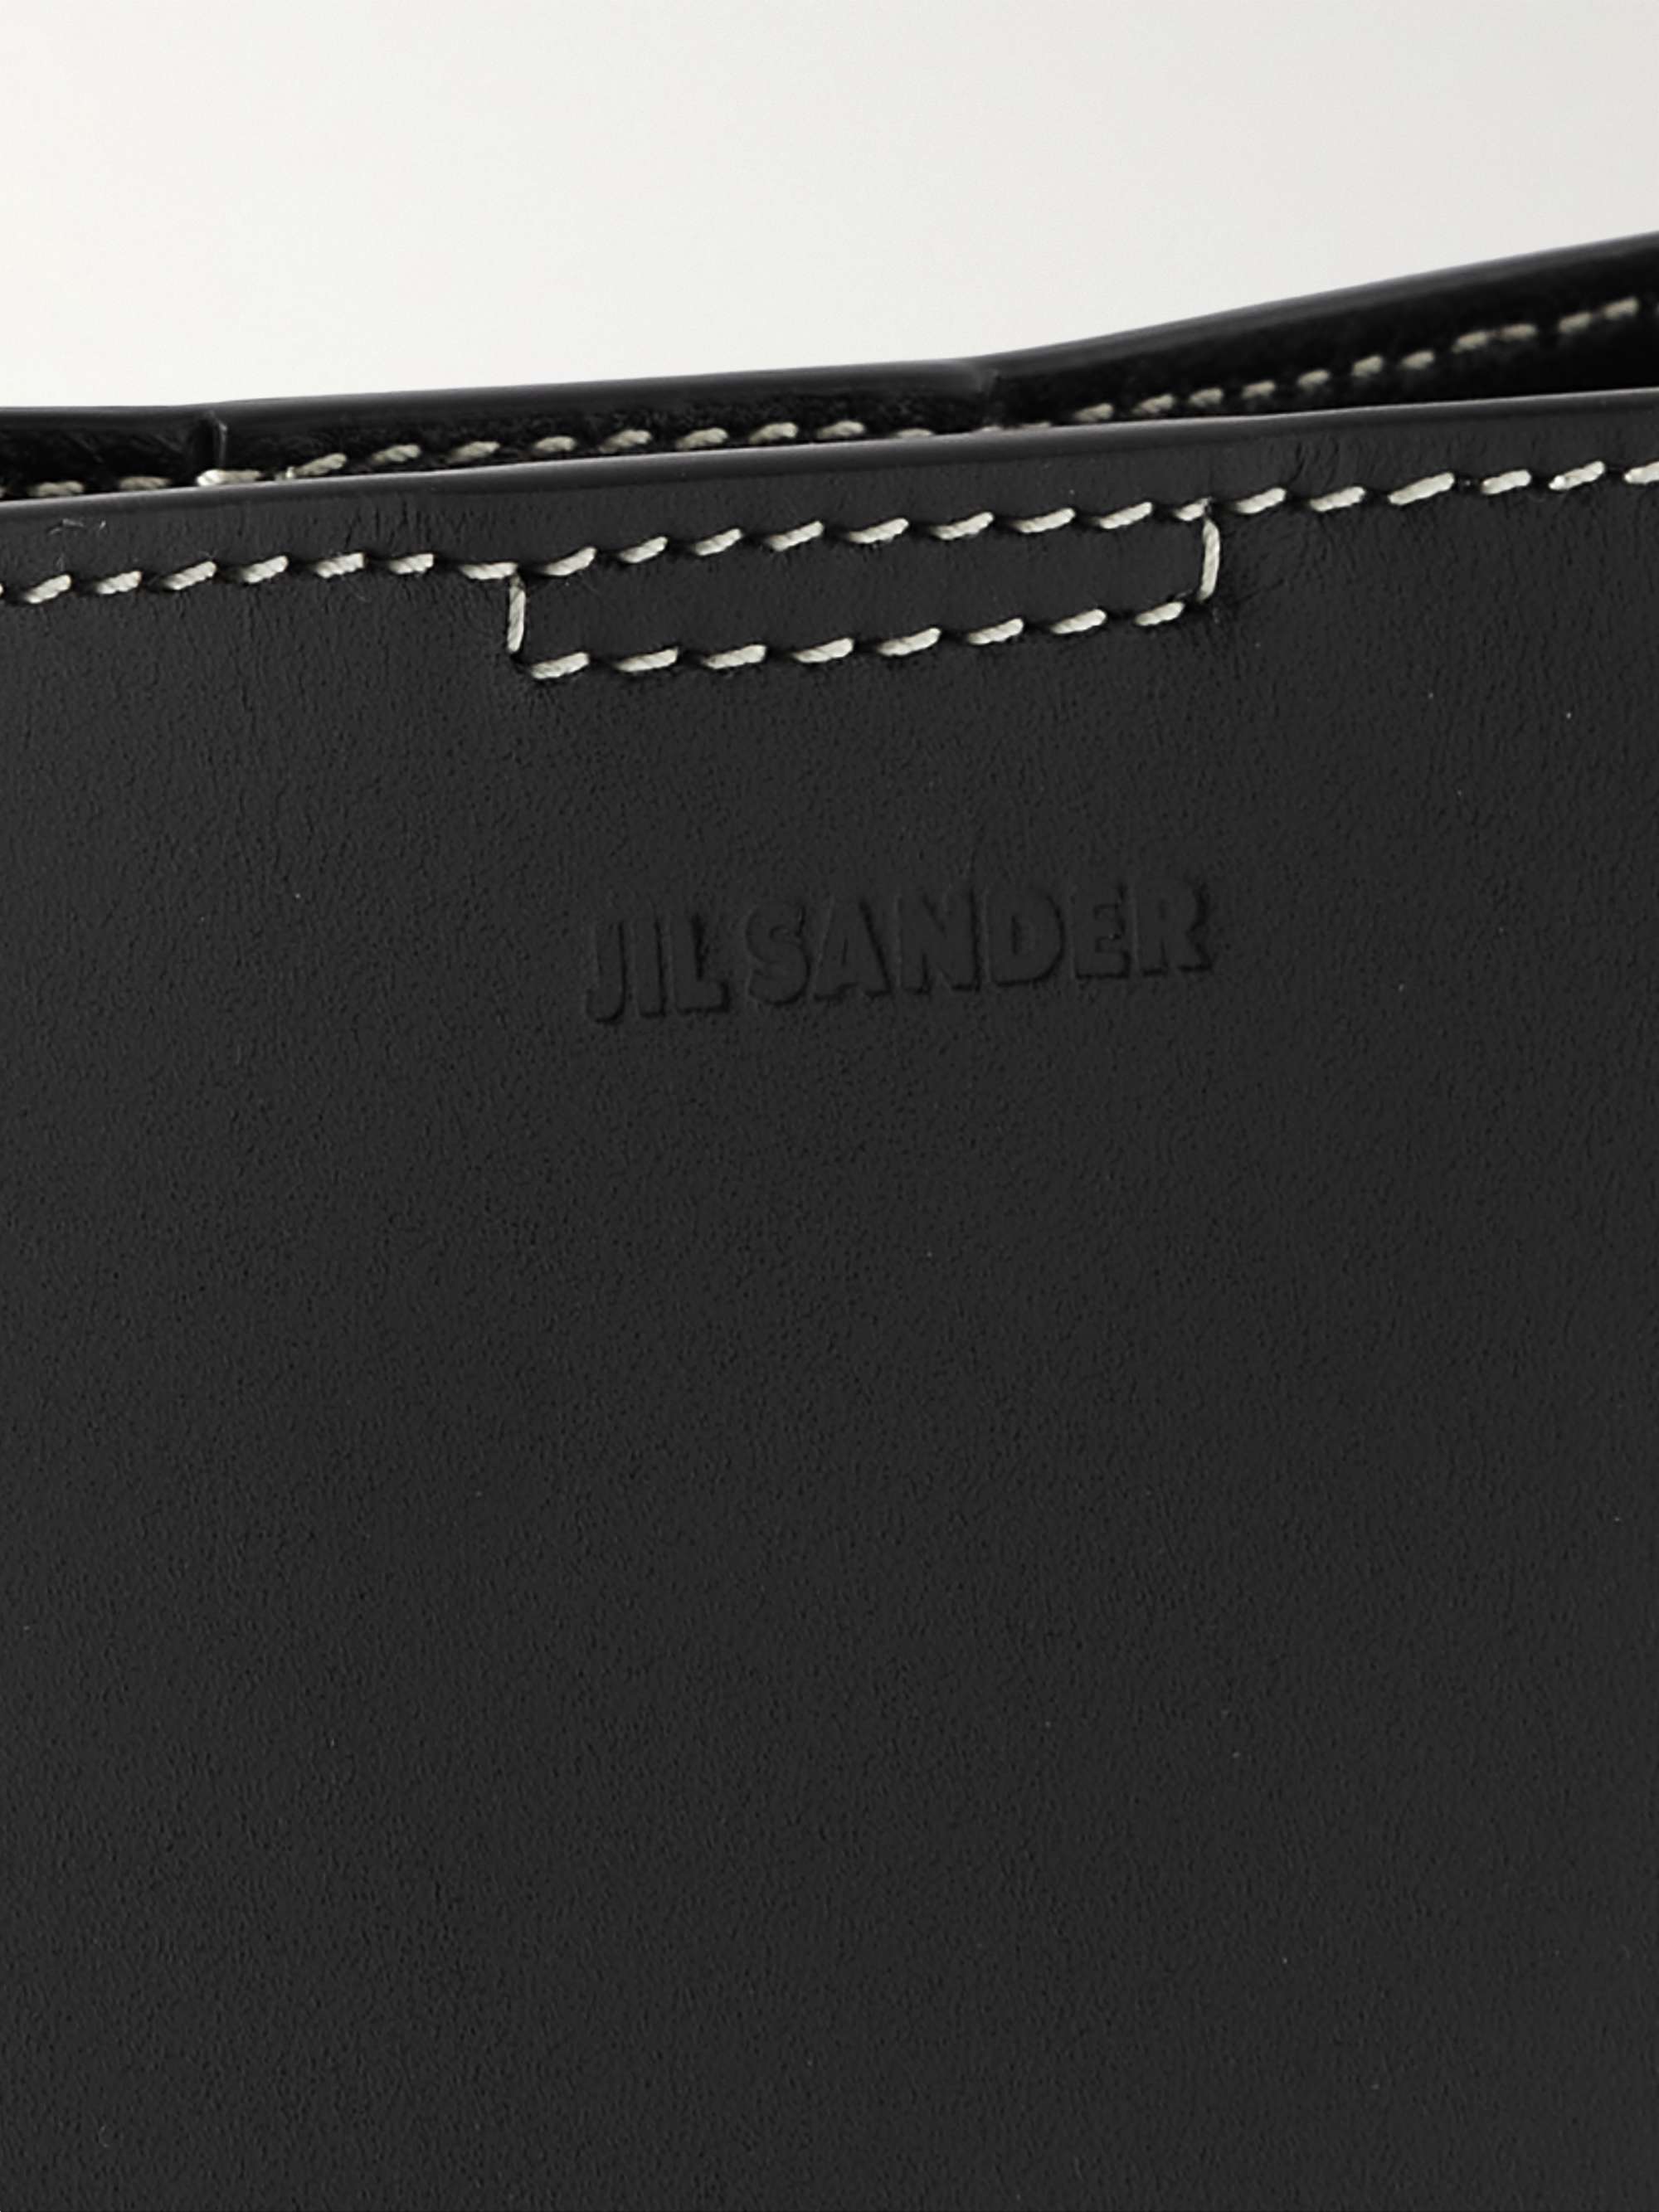 JIL SANDER Tangle Small Leather Messenger Bag